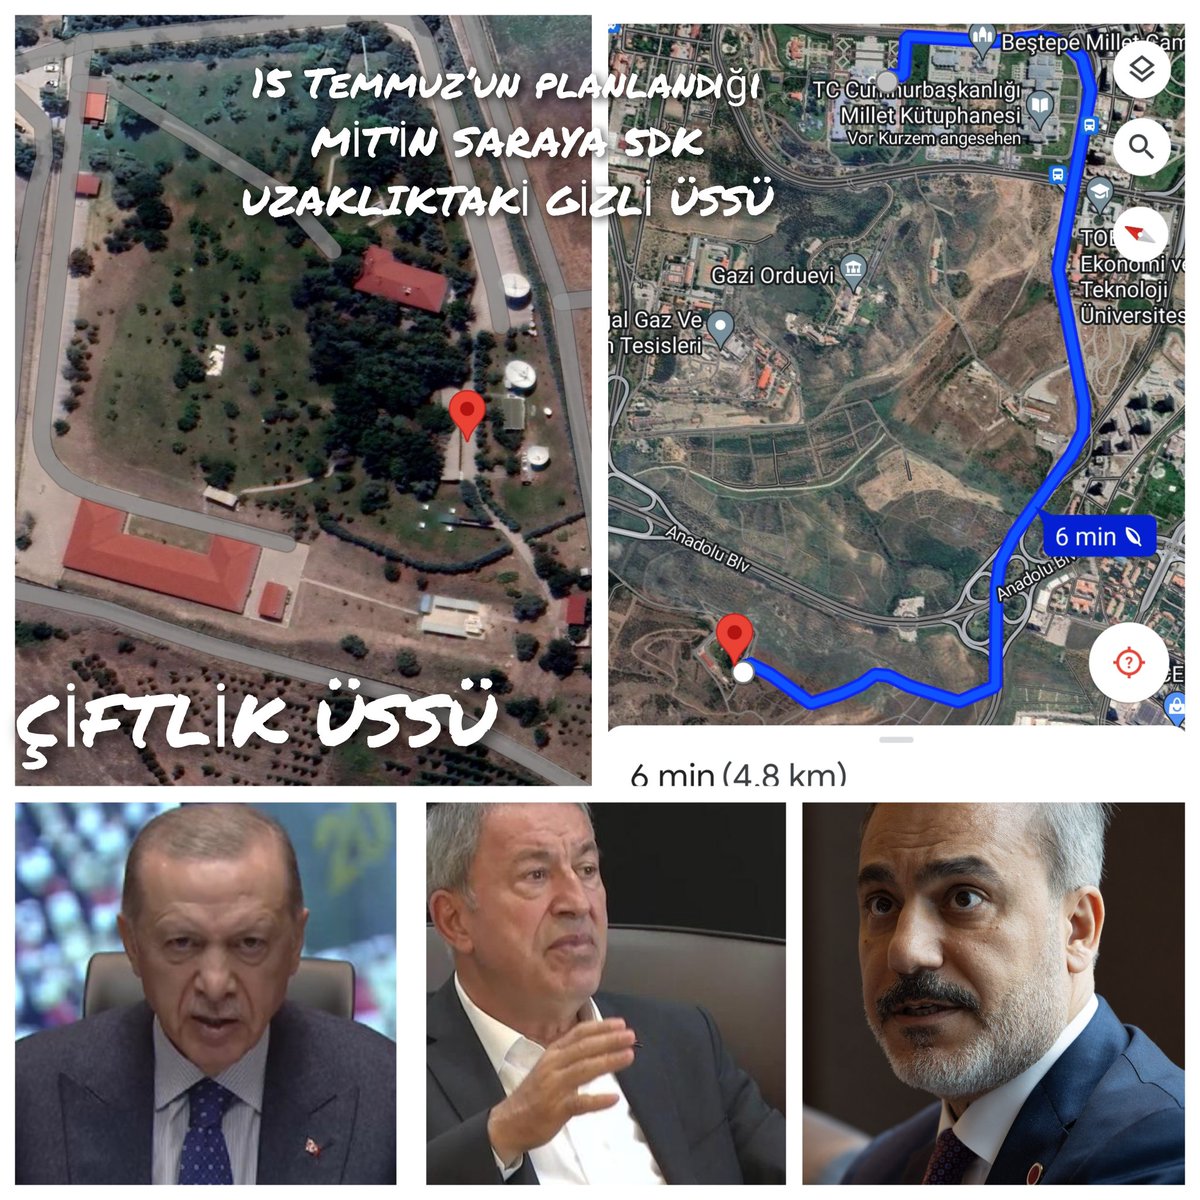 15 TEMMUZ'UN PLANLAYICILARI 
1) Hakan Fidan, Erdoğan ve Hulusi Akar 15 Temmuzdan aylar önce MİT’in saraya 5 dk mesafedeki ÇİFTLİK üssünde defalarca buluşarak 15 Temmuzun planlamasını yaptılar. 15 Temmuzun her aşaması burada detaylı olarak planlandı ve uygulamaya konuldu. Planın